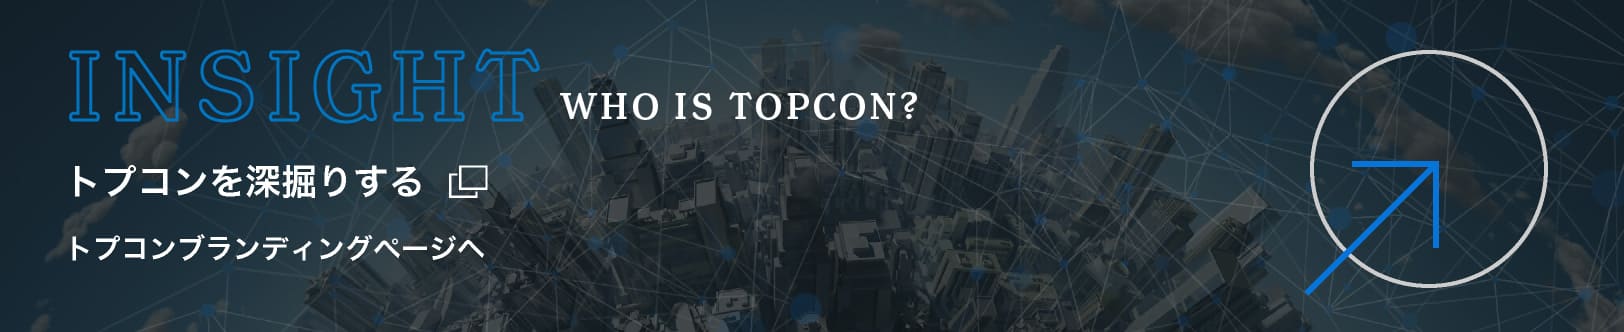 INSIGHT WHO IS TOPCON?　トプコンを深掘りする　トプコンブランディングページへ